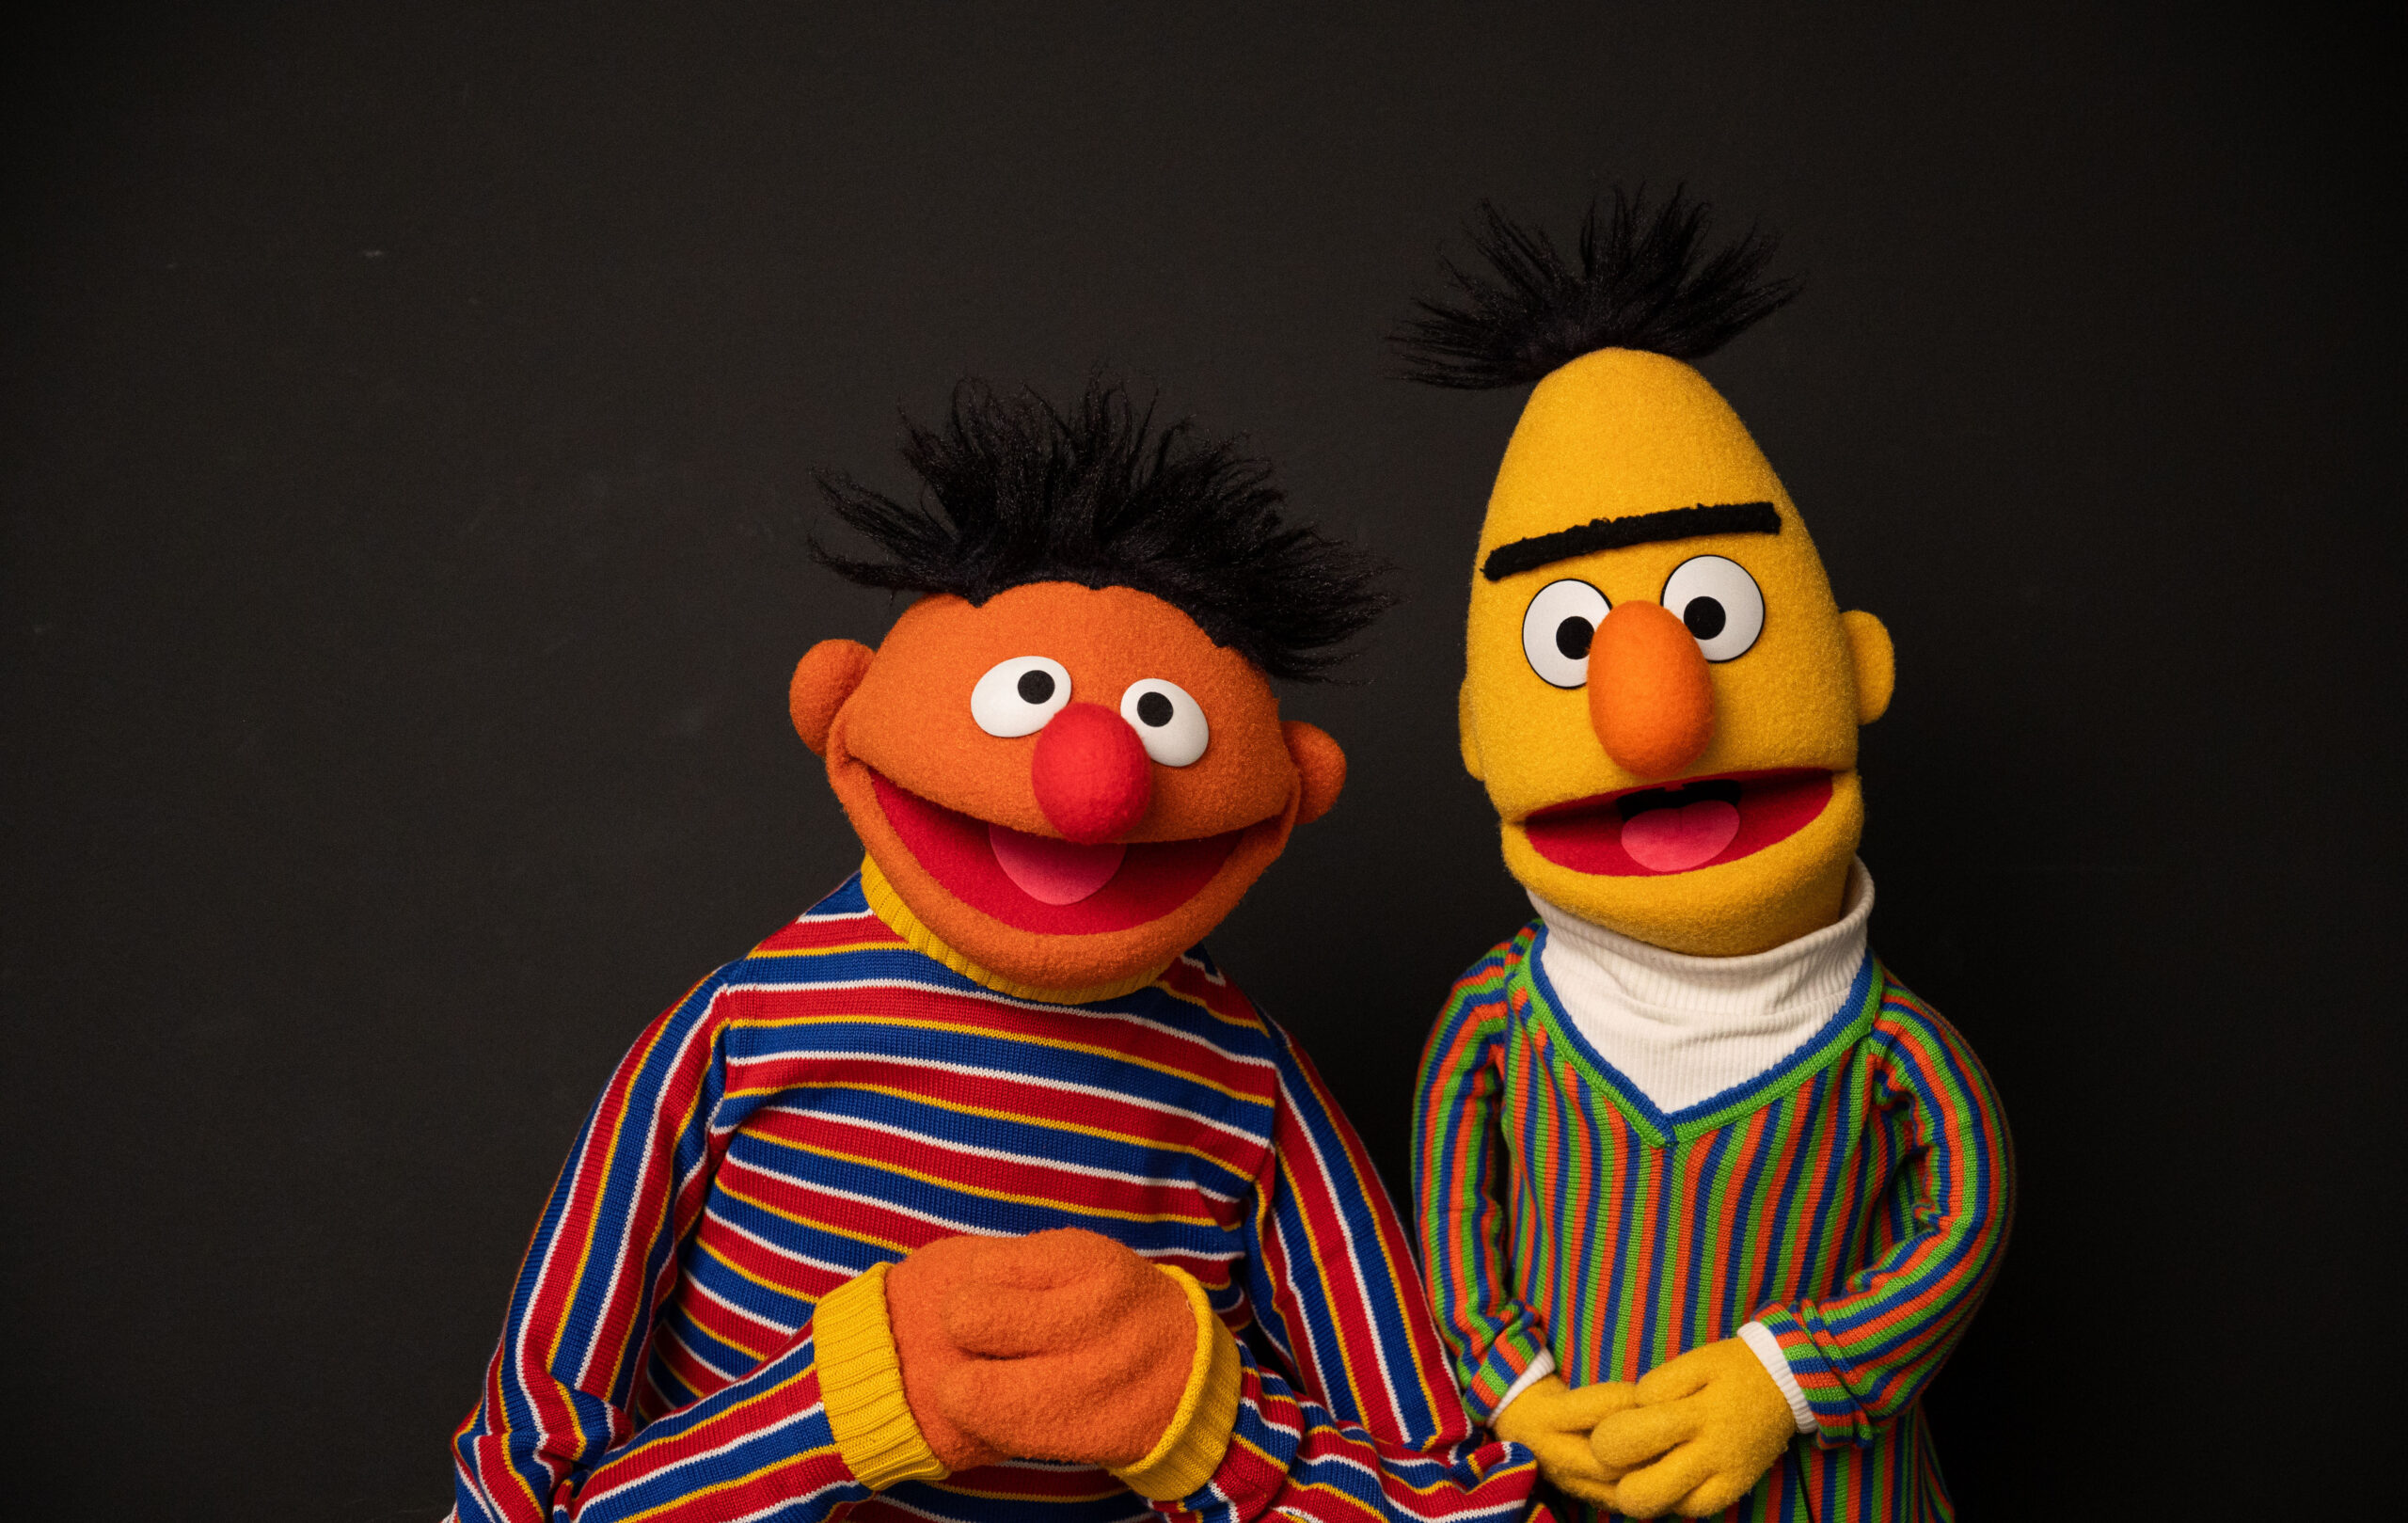 Die Figuren Ernie und Bert aus der Sesamstraße, aufgenommen in einem Fotostudio anlässlich des 50. Jubiläums der Sesamstraße.